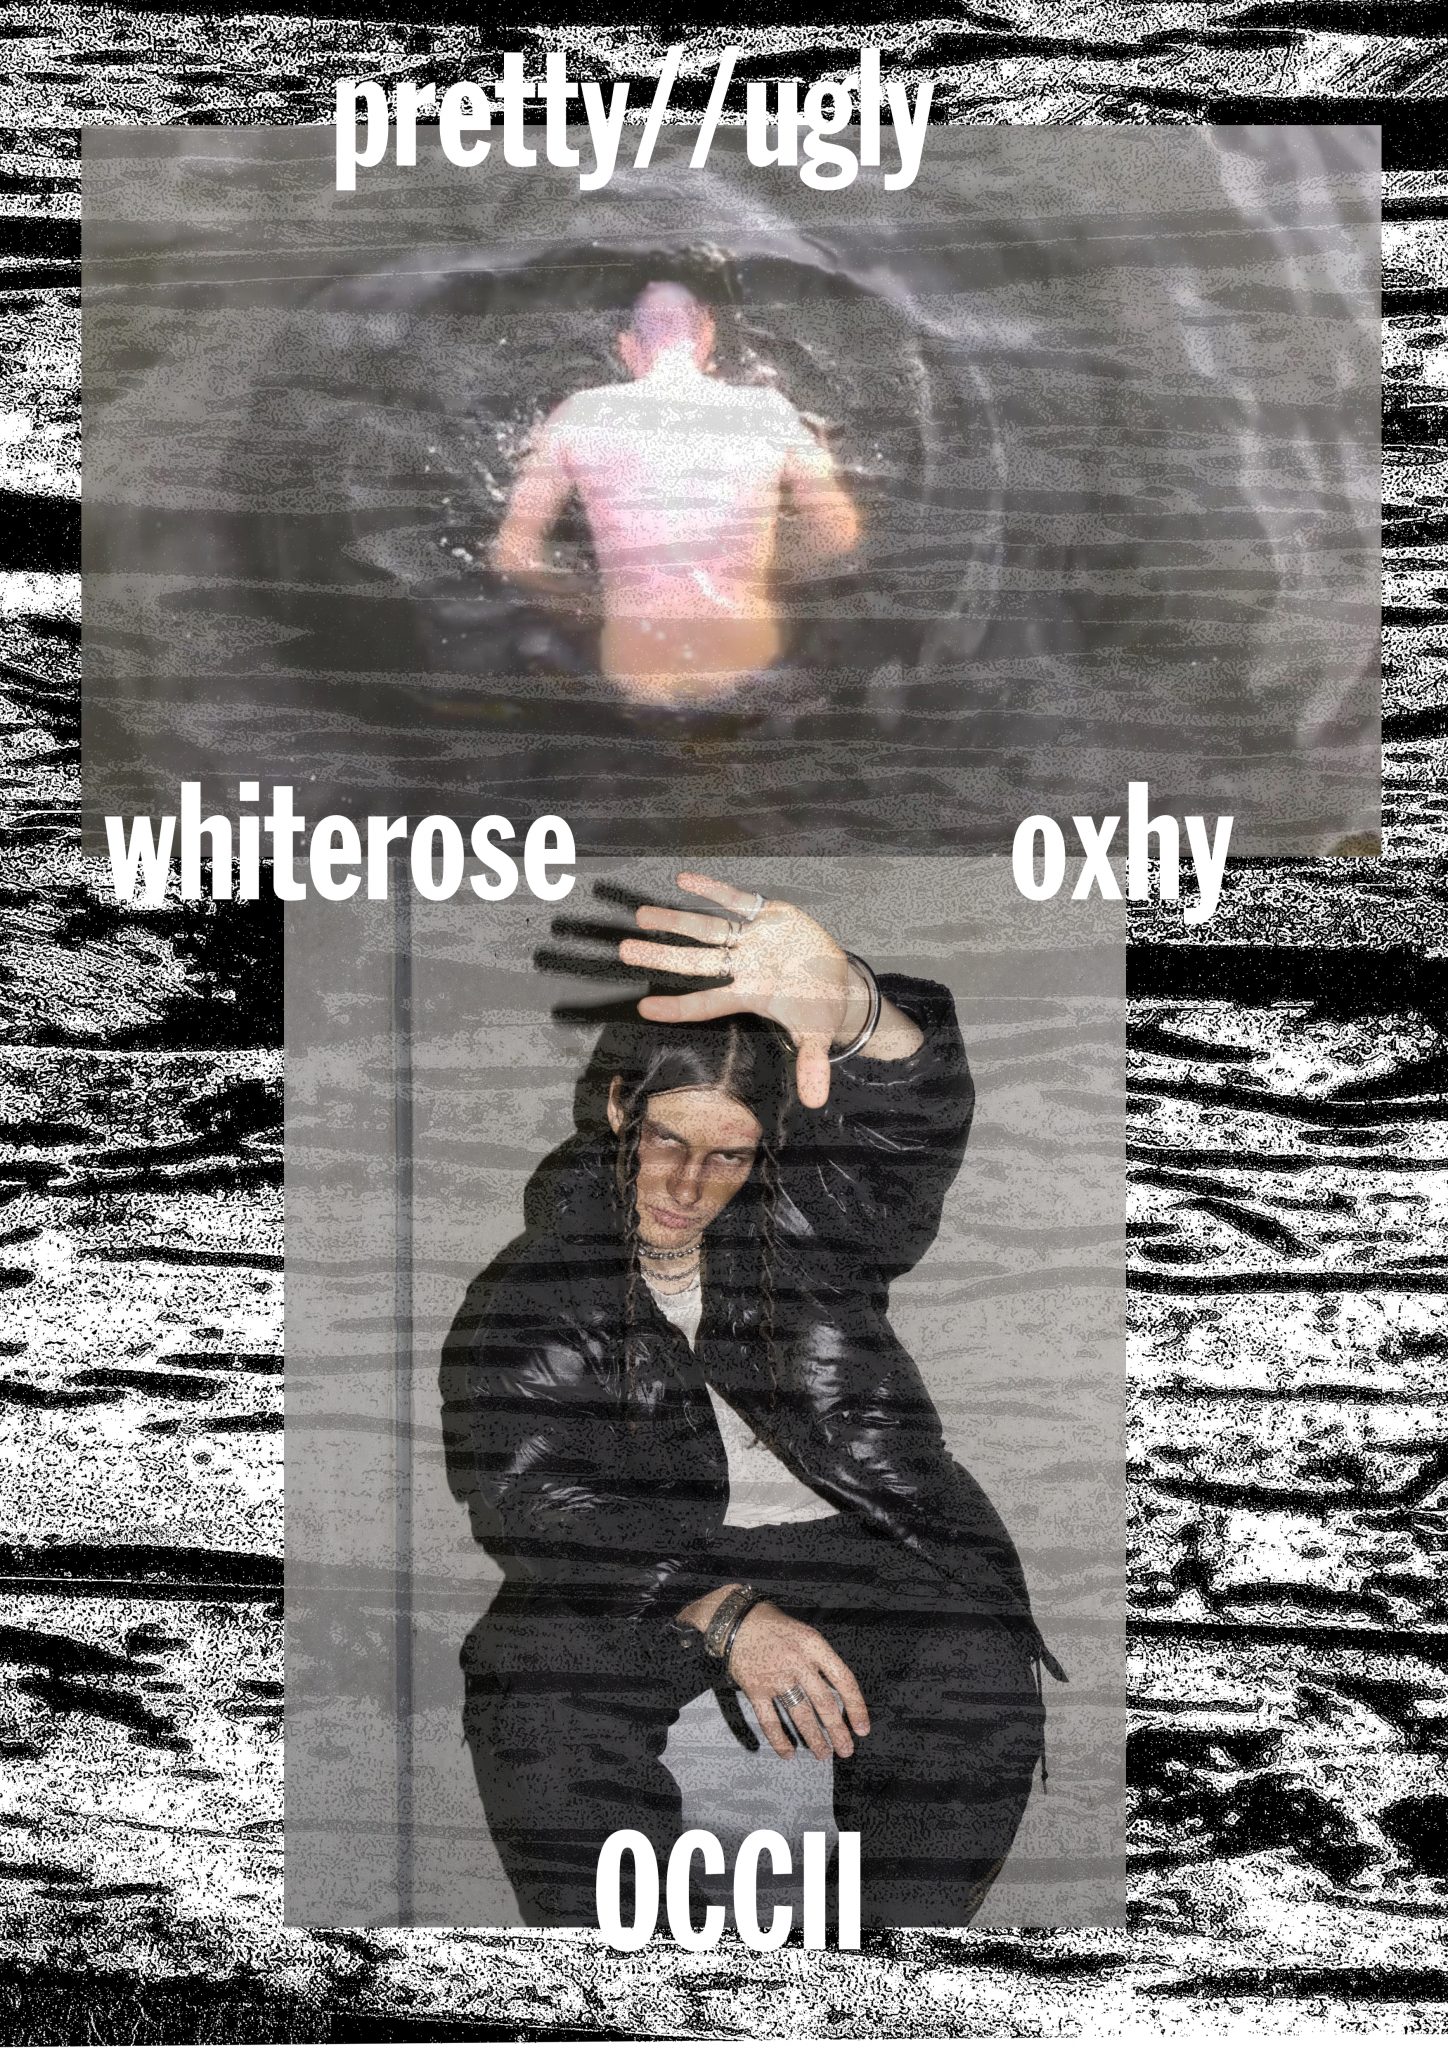 [CANCELLED] OXHY + WHITEROSE + DJ Serene